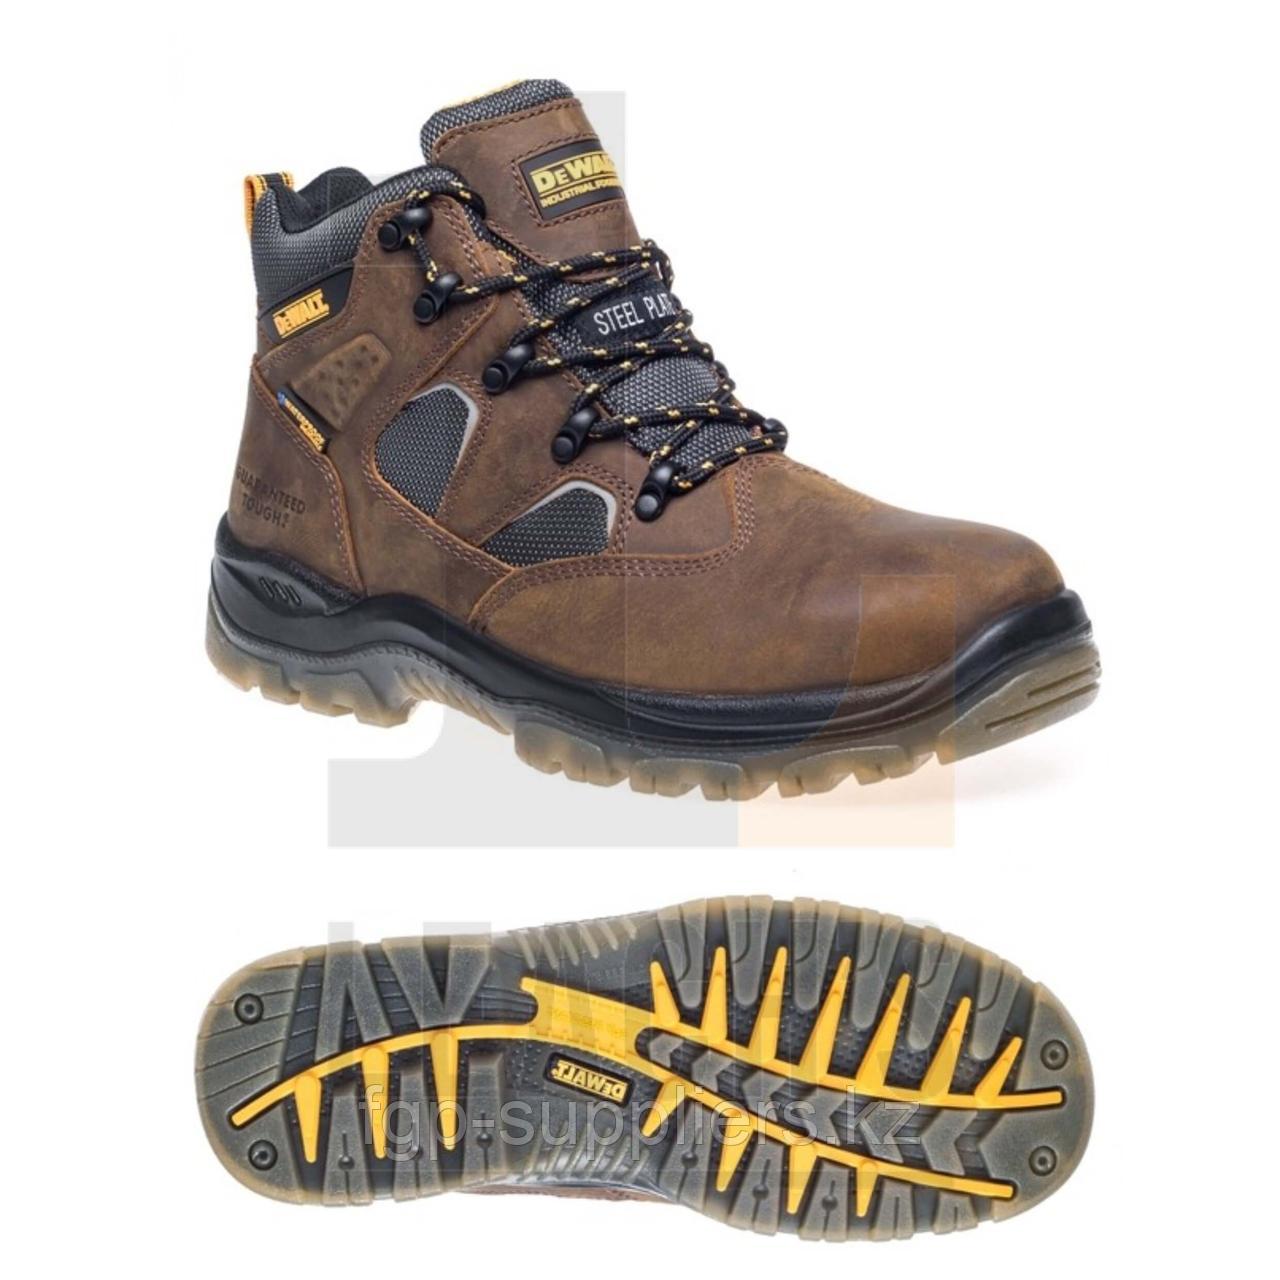 DeWalt Challenger Hiker Safety Boot, Brown / DeWalt Challenger Треккинговые защитные ботинки, Коричневые